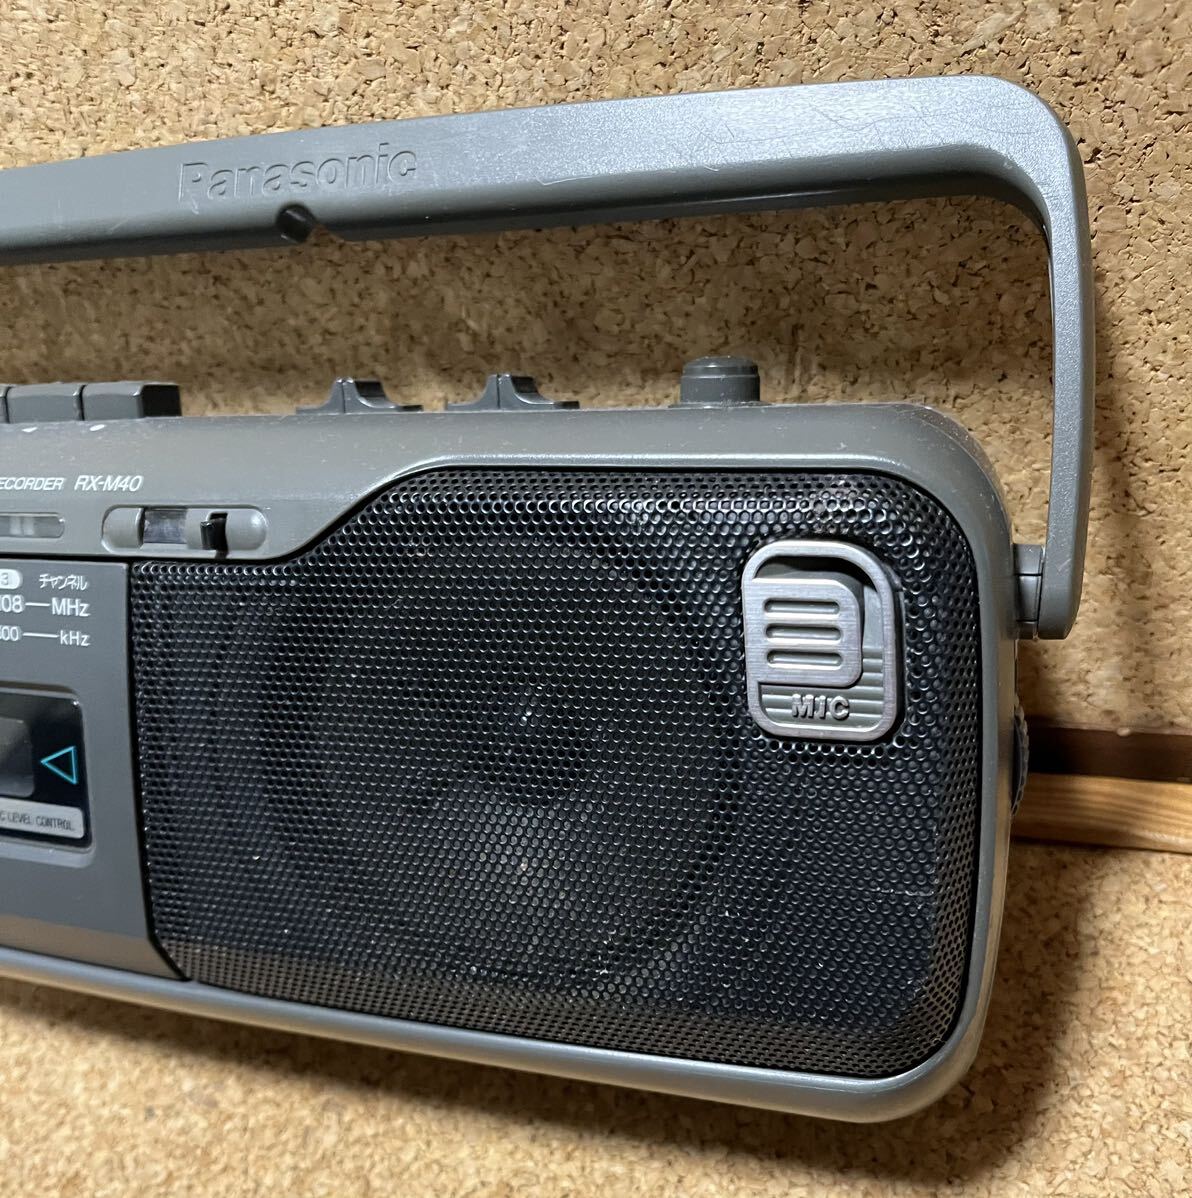 パナソニック Panasonic ラジオカセットレコーダー ラジカセ RX-M40 2電源方式 通電動作確認済の画像6